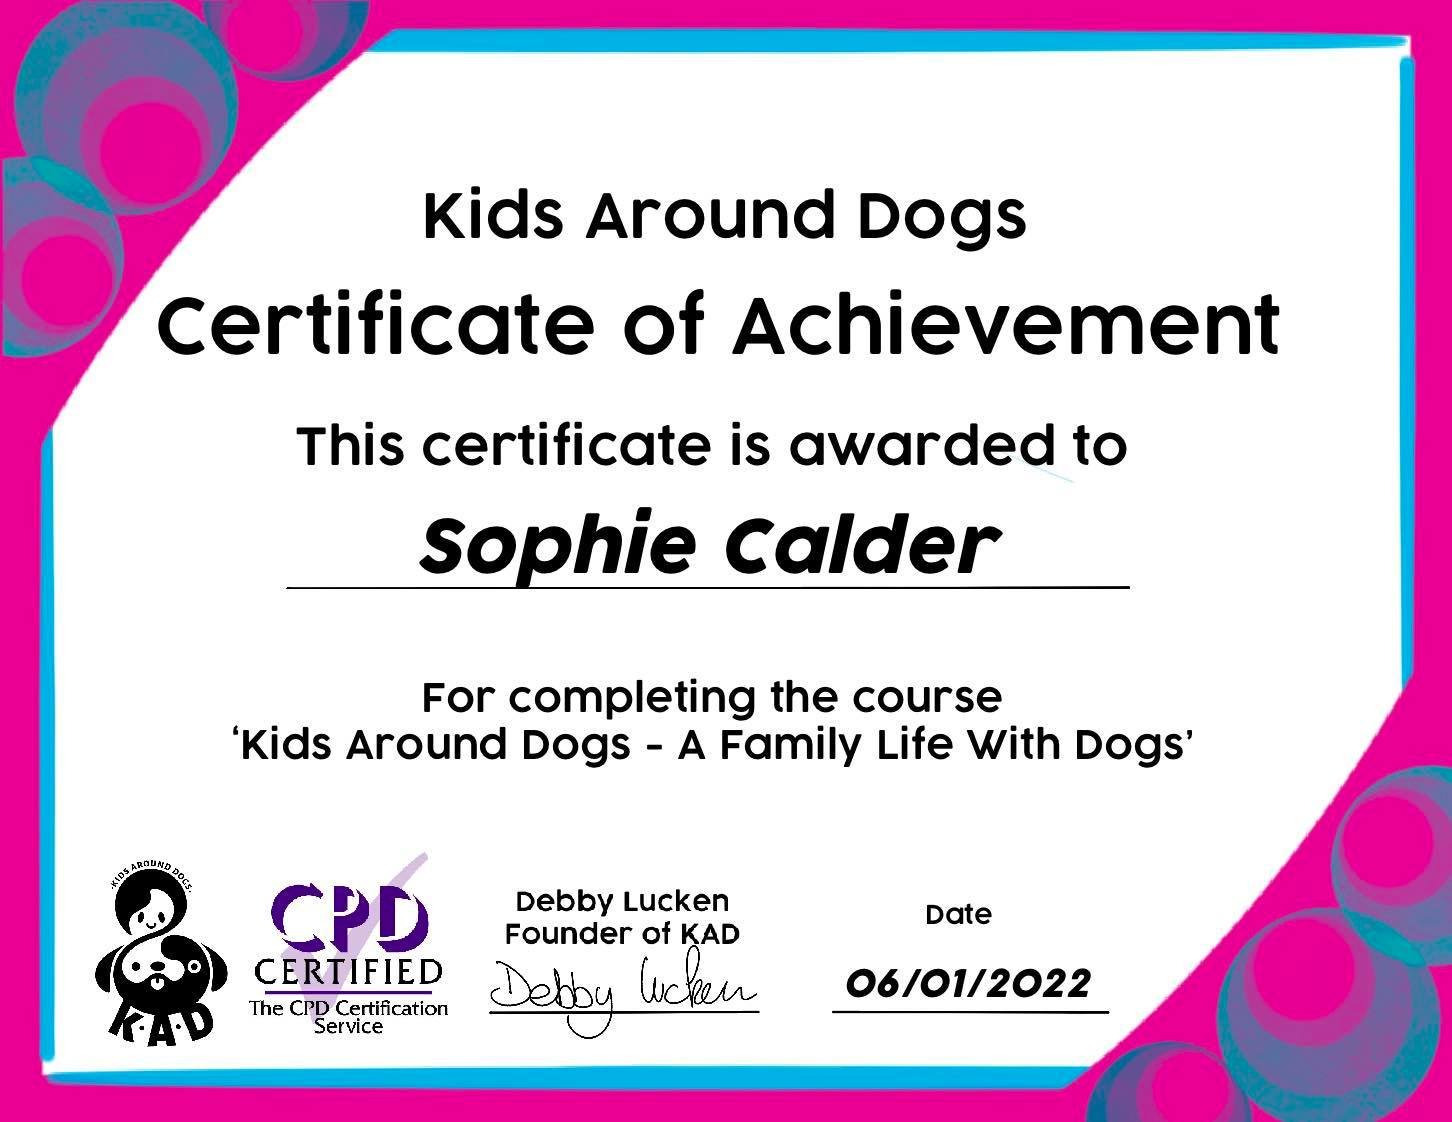 Sophie Calder Certificate.jpg